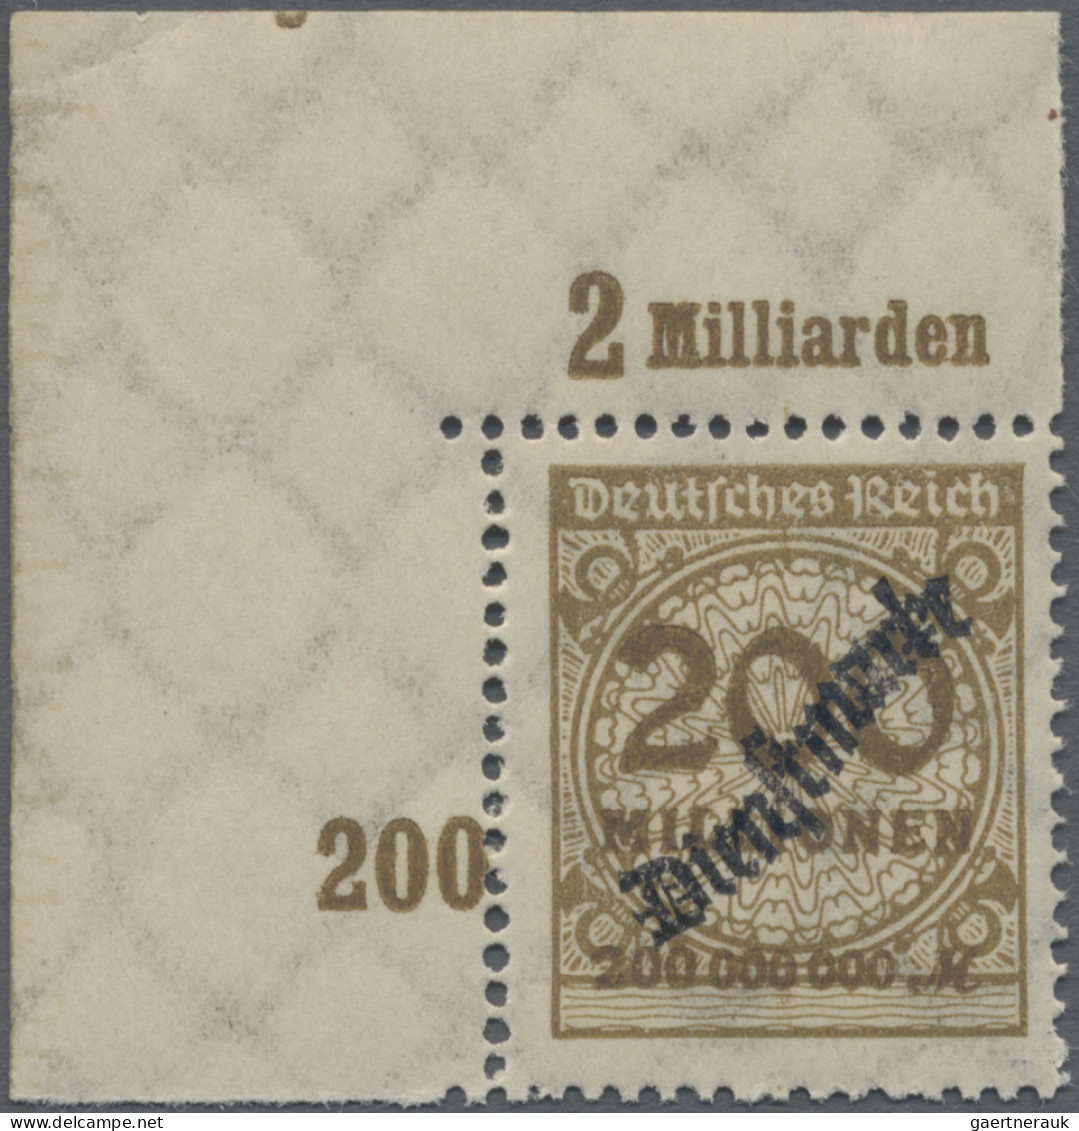 Deutsches Reich - Dienstmarken: 1923, Wertangabe Im Rosettenmuster, 200 Mio M In - Officials